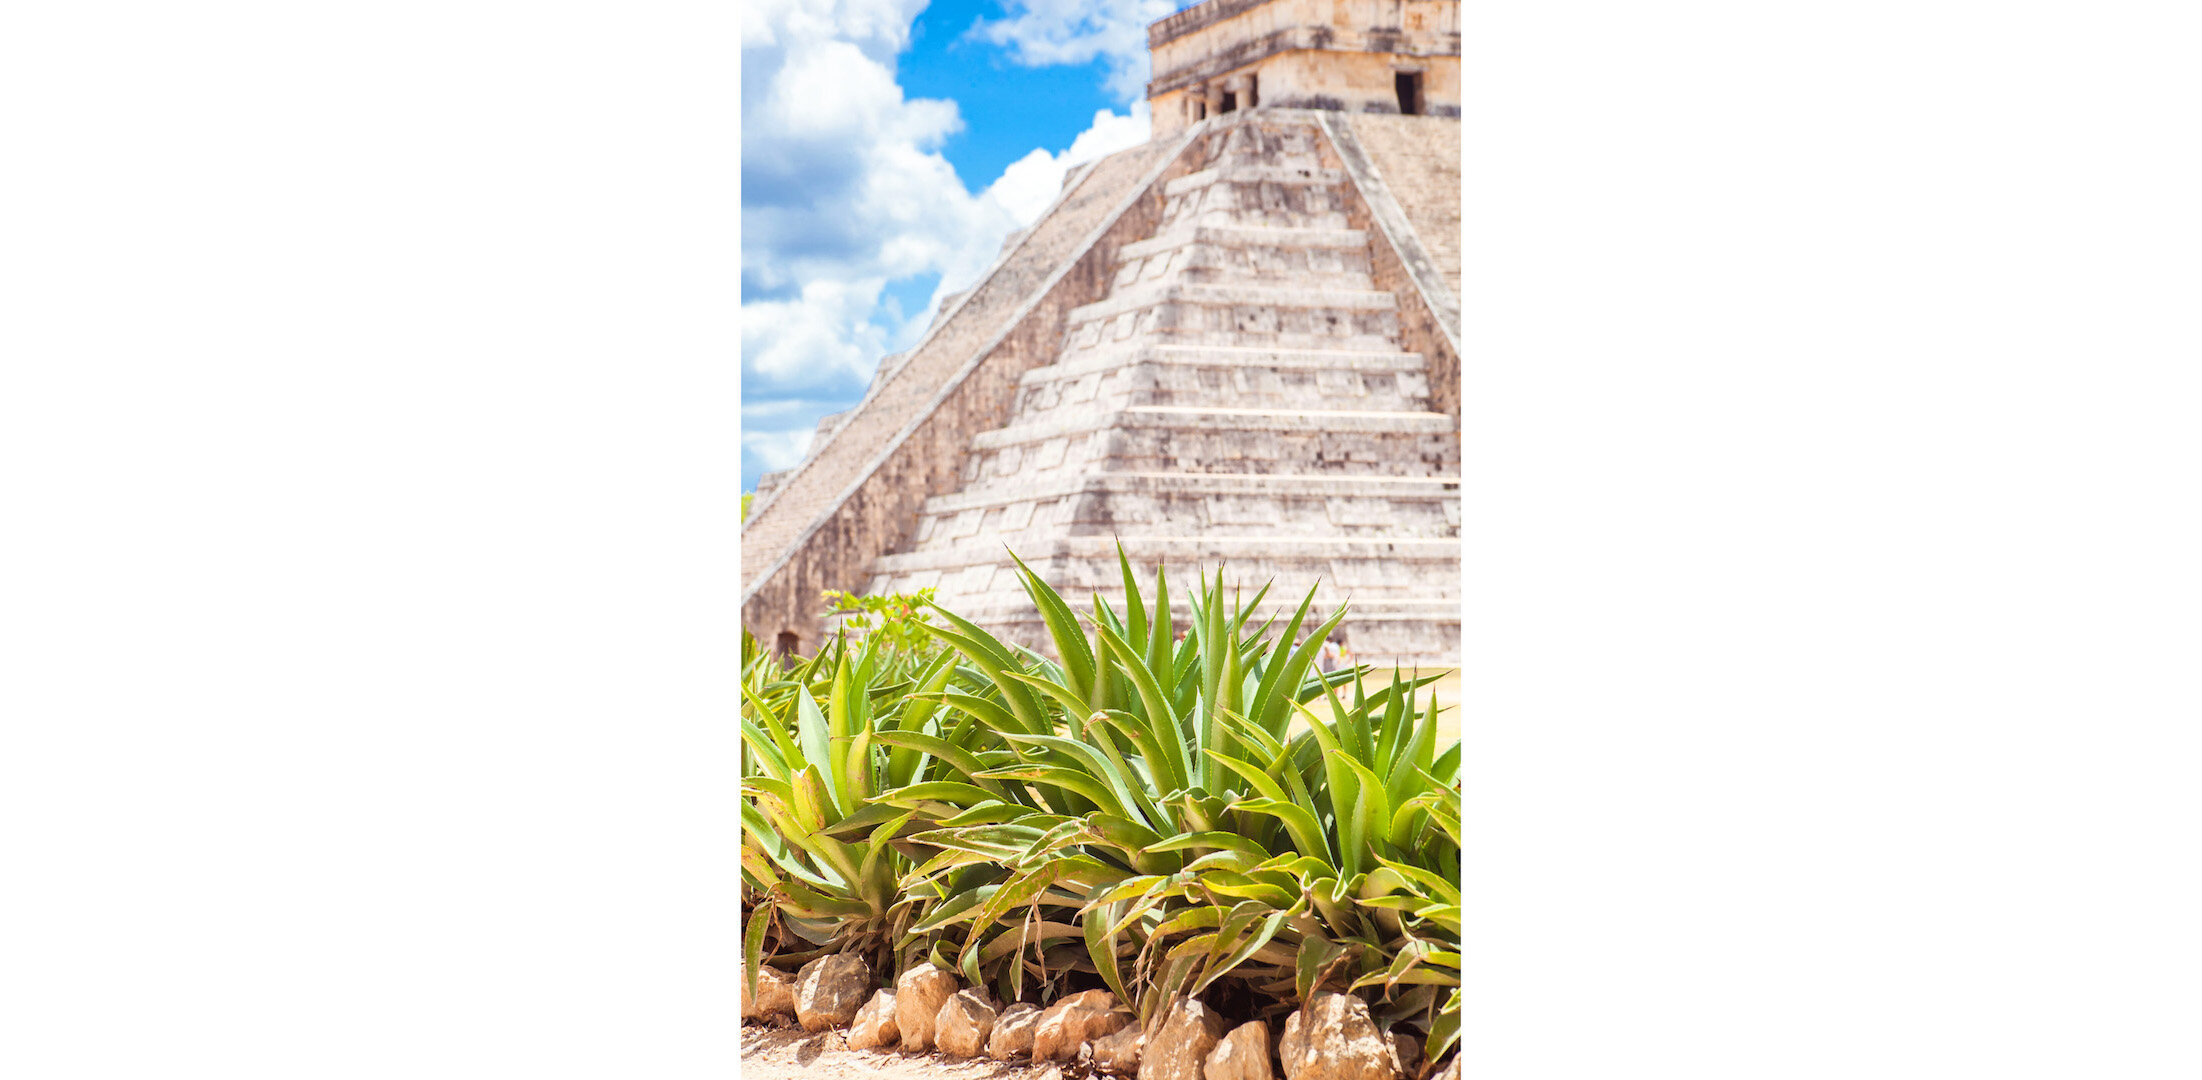 Chichén Itzá, Yucatan Peninsula, Mexico